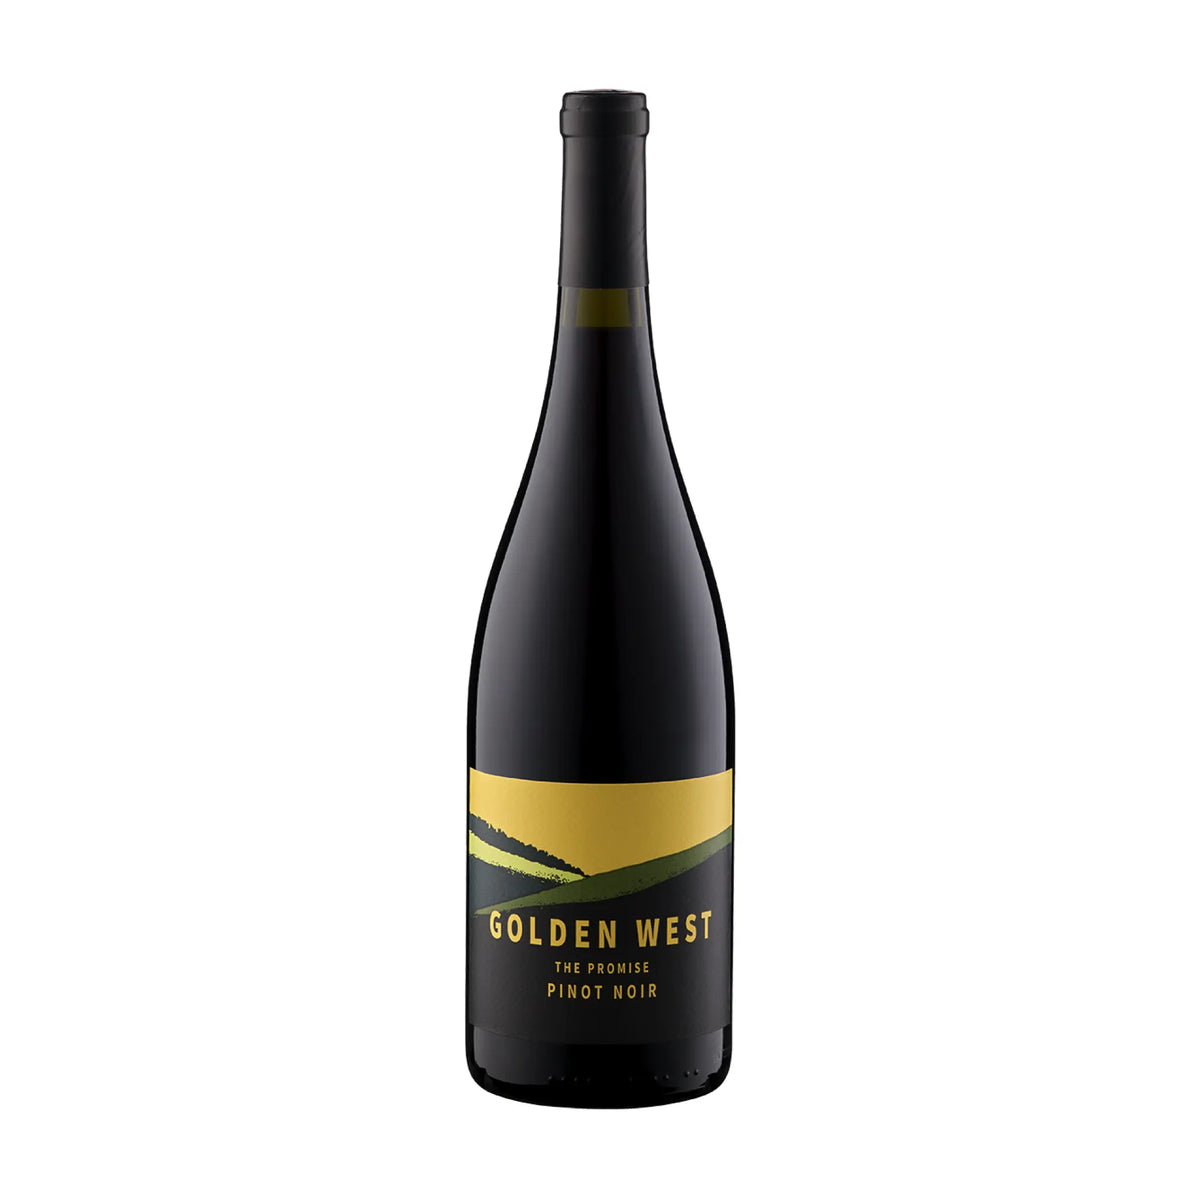 Glenbrook Vineyards-Rotwein-Pinot Noir-USA-Washington-2020 Golden West Pinot Noir-WINECOM